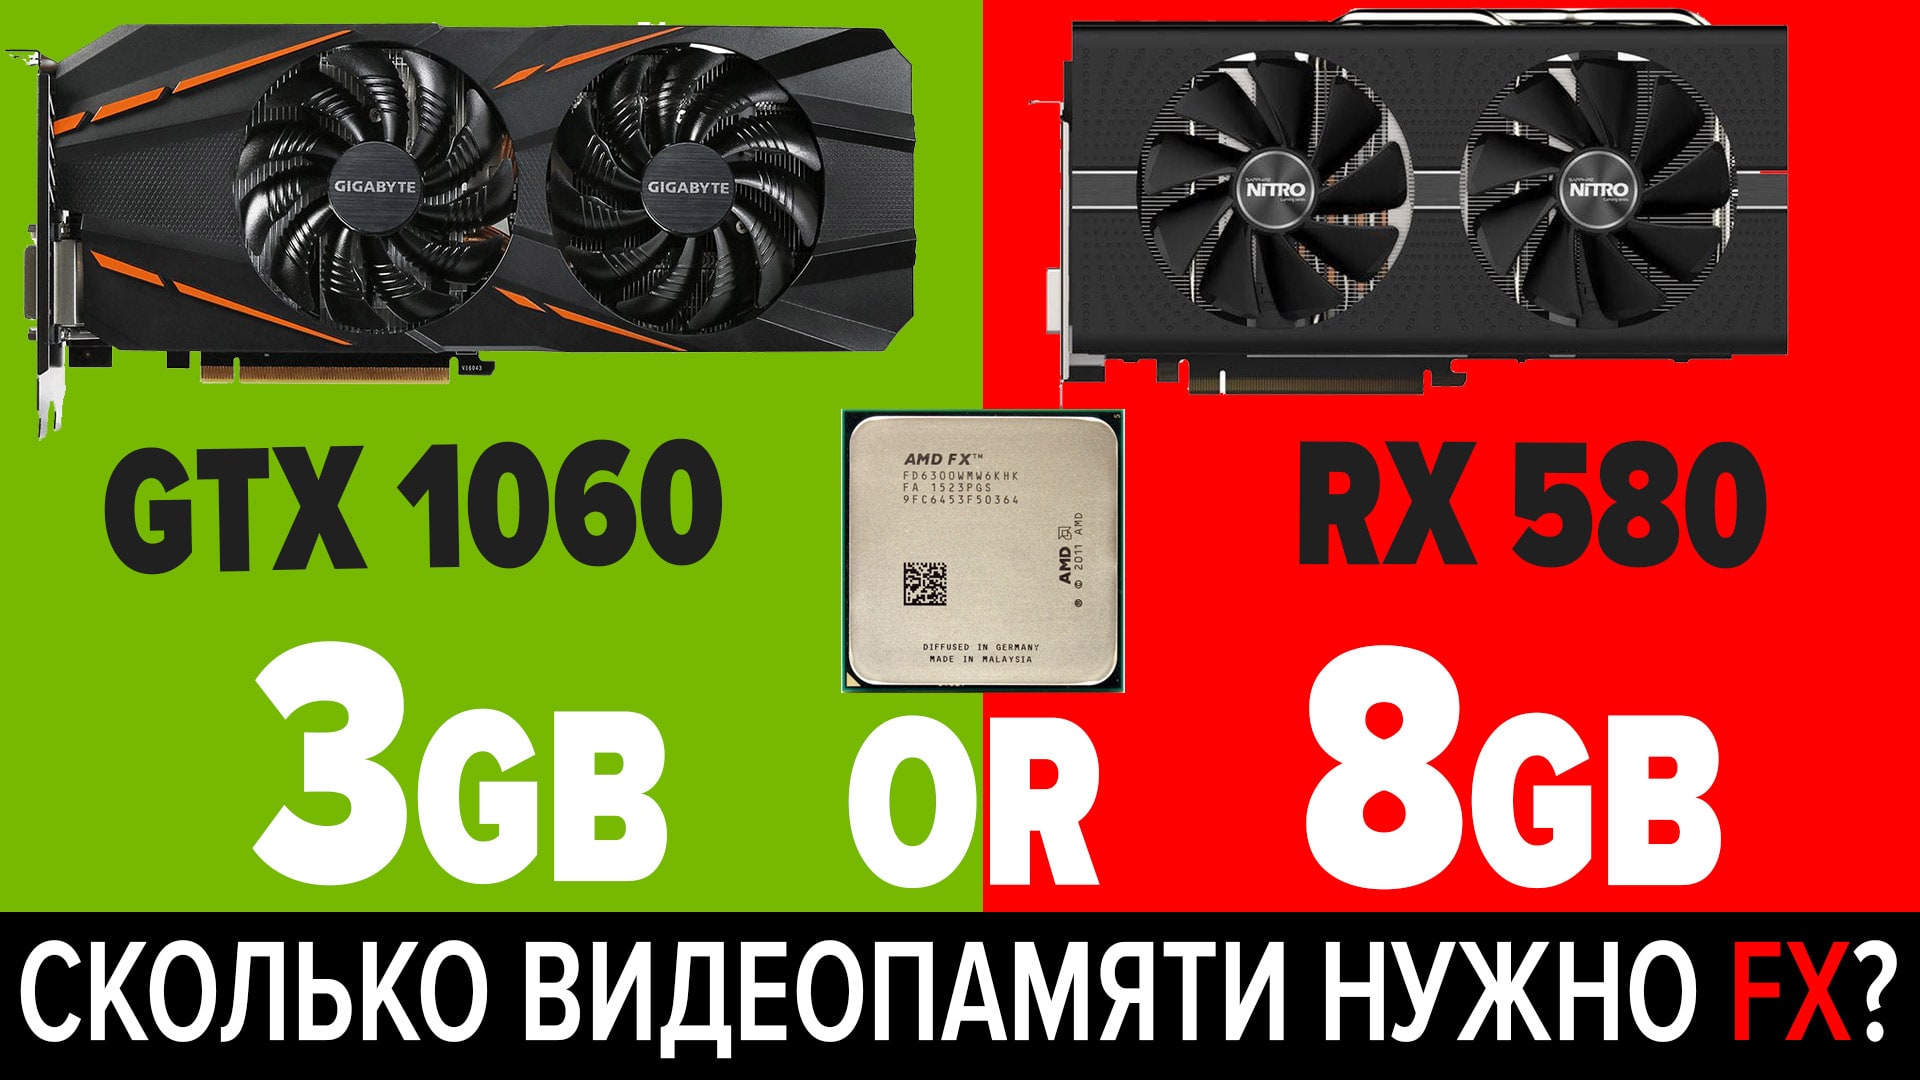 RX 580 8 Gb vs GTX 1060 3Gb